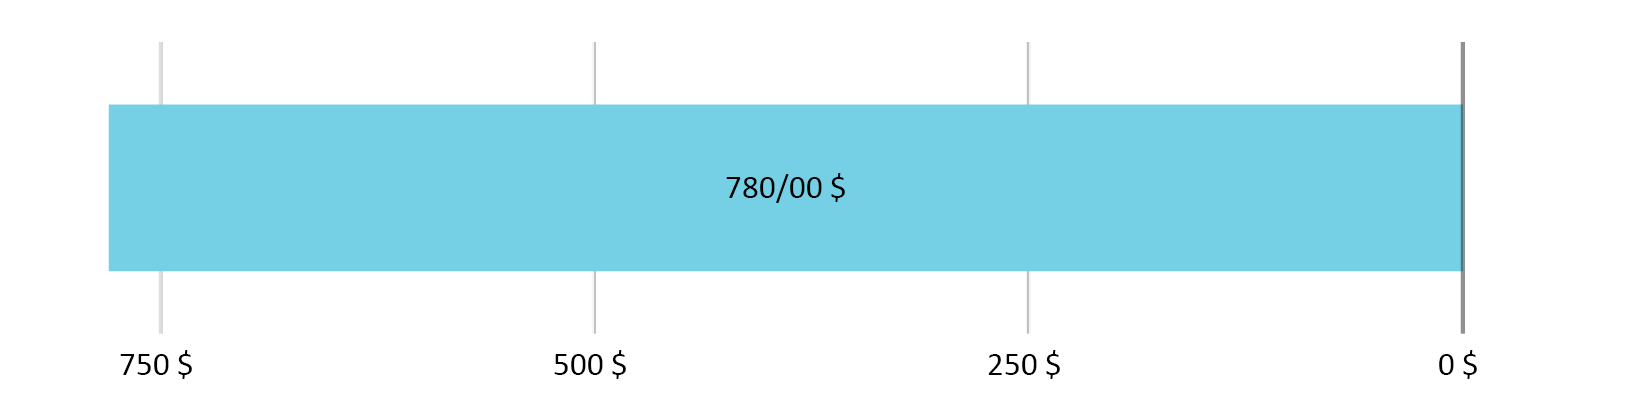 0 دلار و 00 سنت خرج شده، 780 دلار و 00 سنت باقی مانده